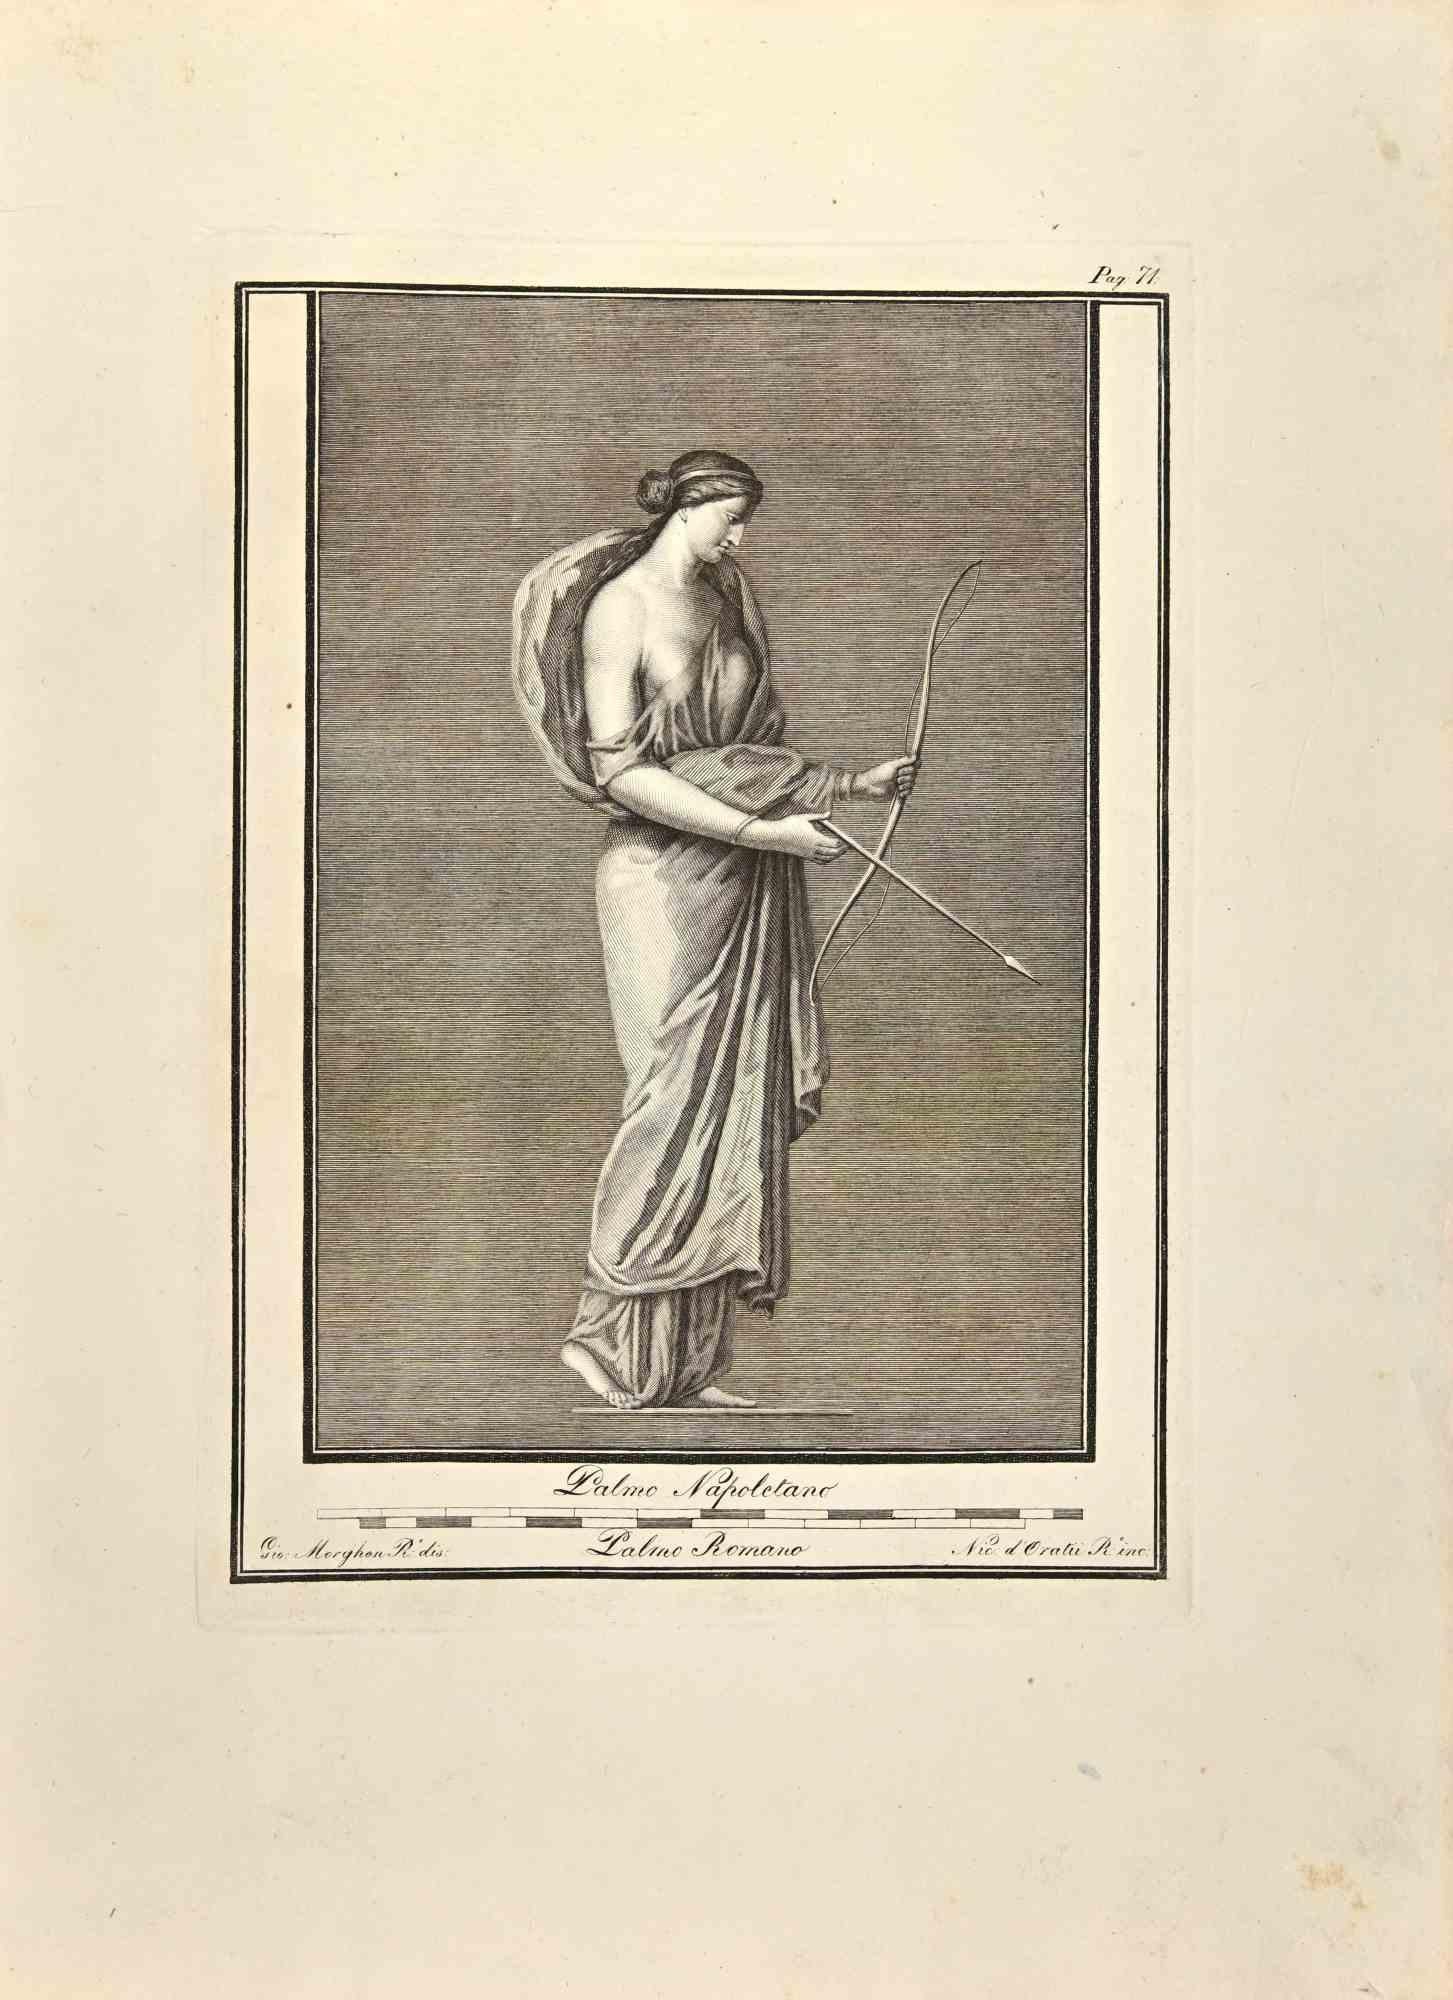 Déesse Artemis des "Antiquités d'Herculanum" est une gravure sur papier réalisée par Giovanni Morghen au 18ème siècle.

Signé sur la plaque.

Bon état avec quelques pliures.

La gravure appartient à la suite d'estampes "Antiquités d'Herculanum